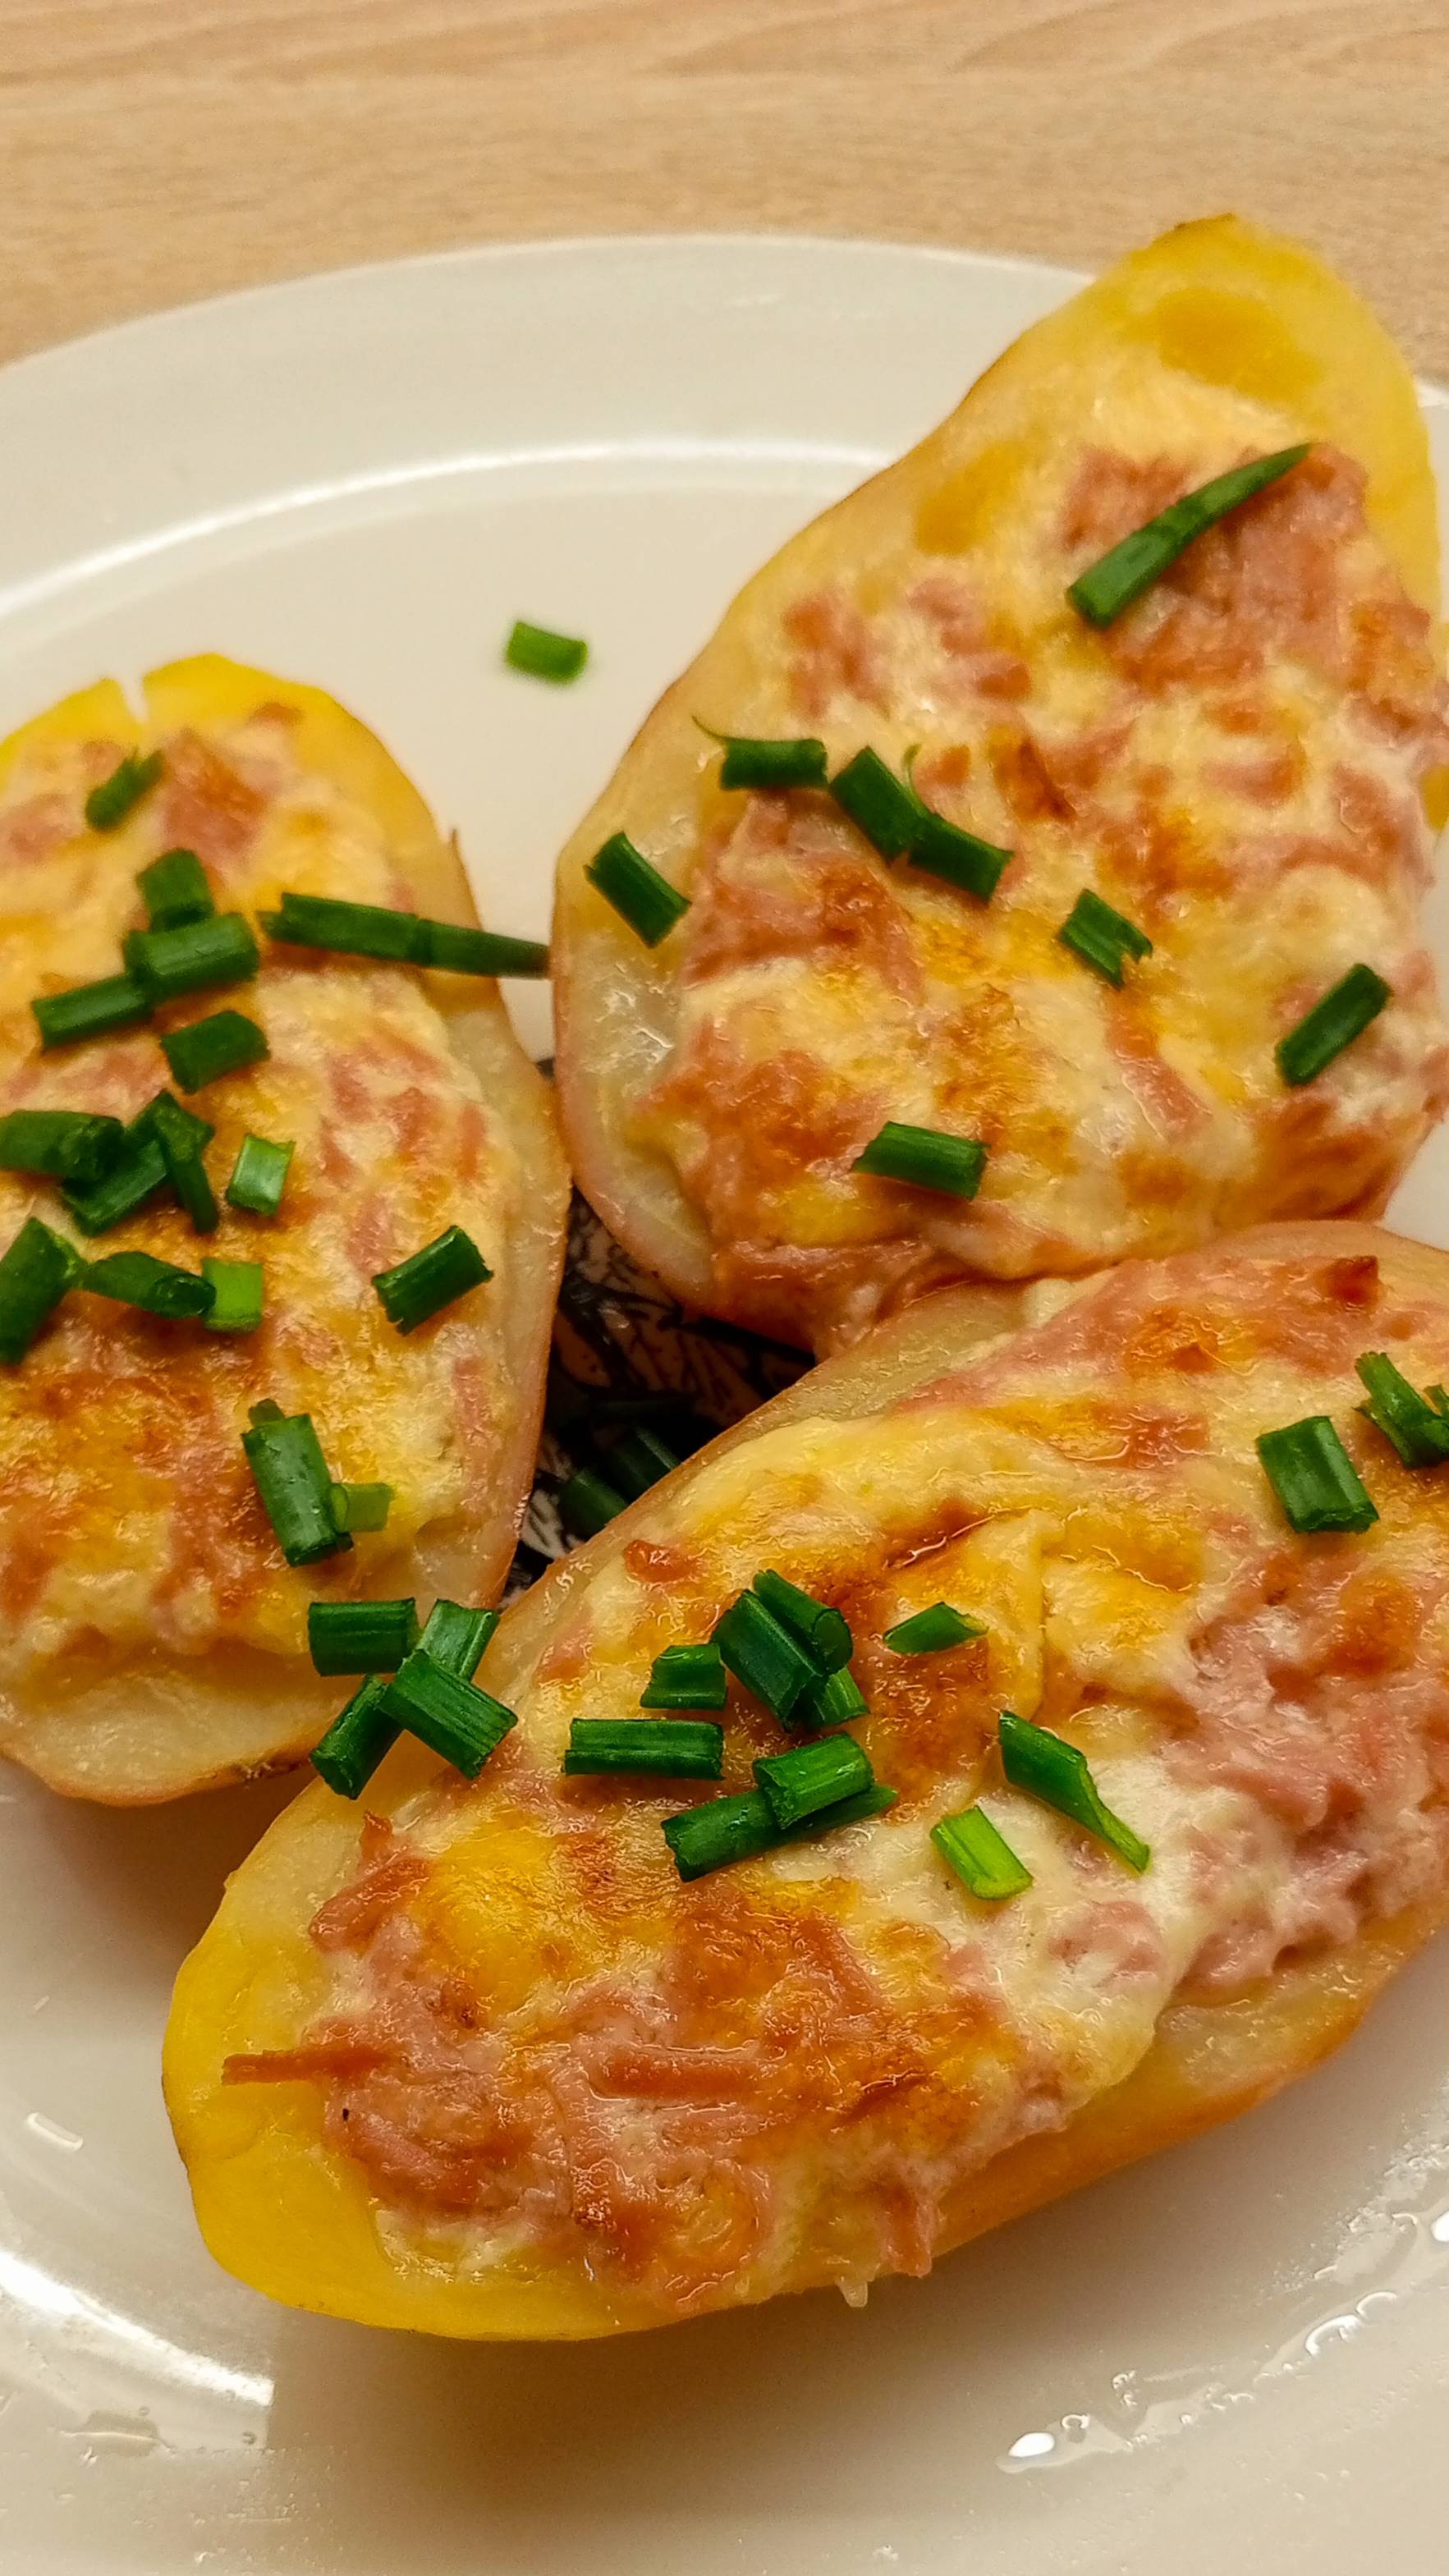 Картофель с сыром и колбасой!
Вкусное простое блюдо!#картофель #простойрецепт

Пошаговый рецепт:
got